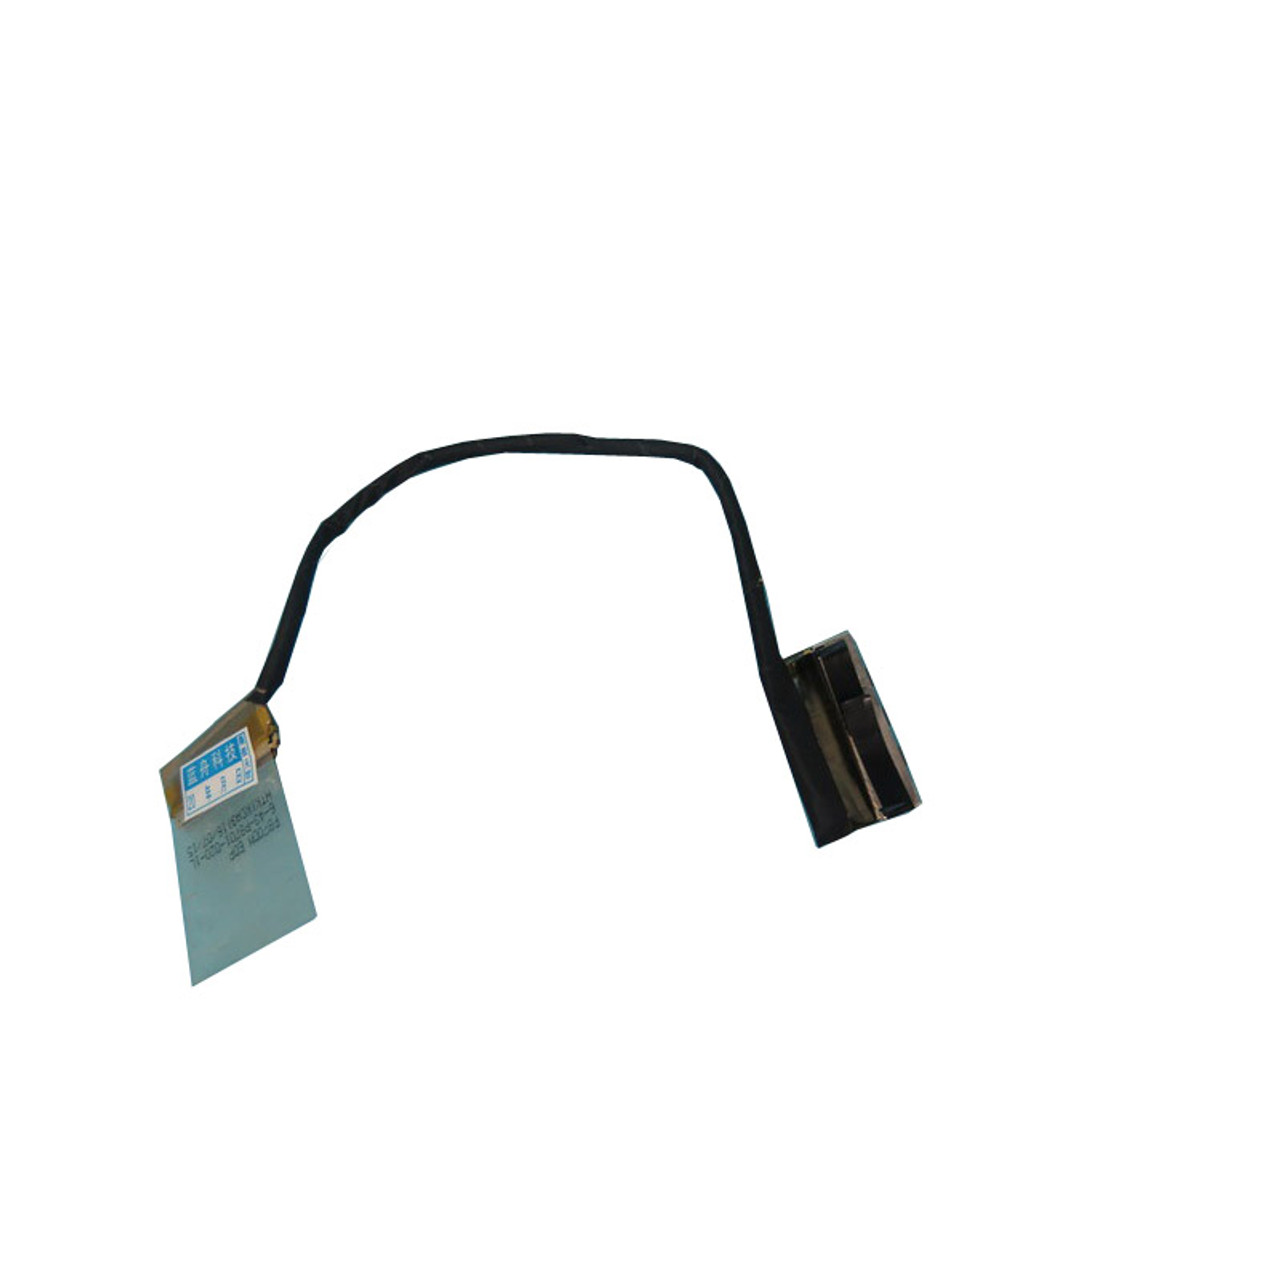 Laptop LCD Cable For CLEVO P870 P870DM P870DM1 P870DM2 P870DM3 6